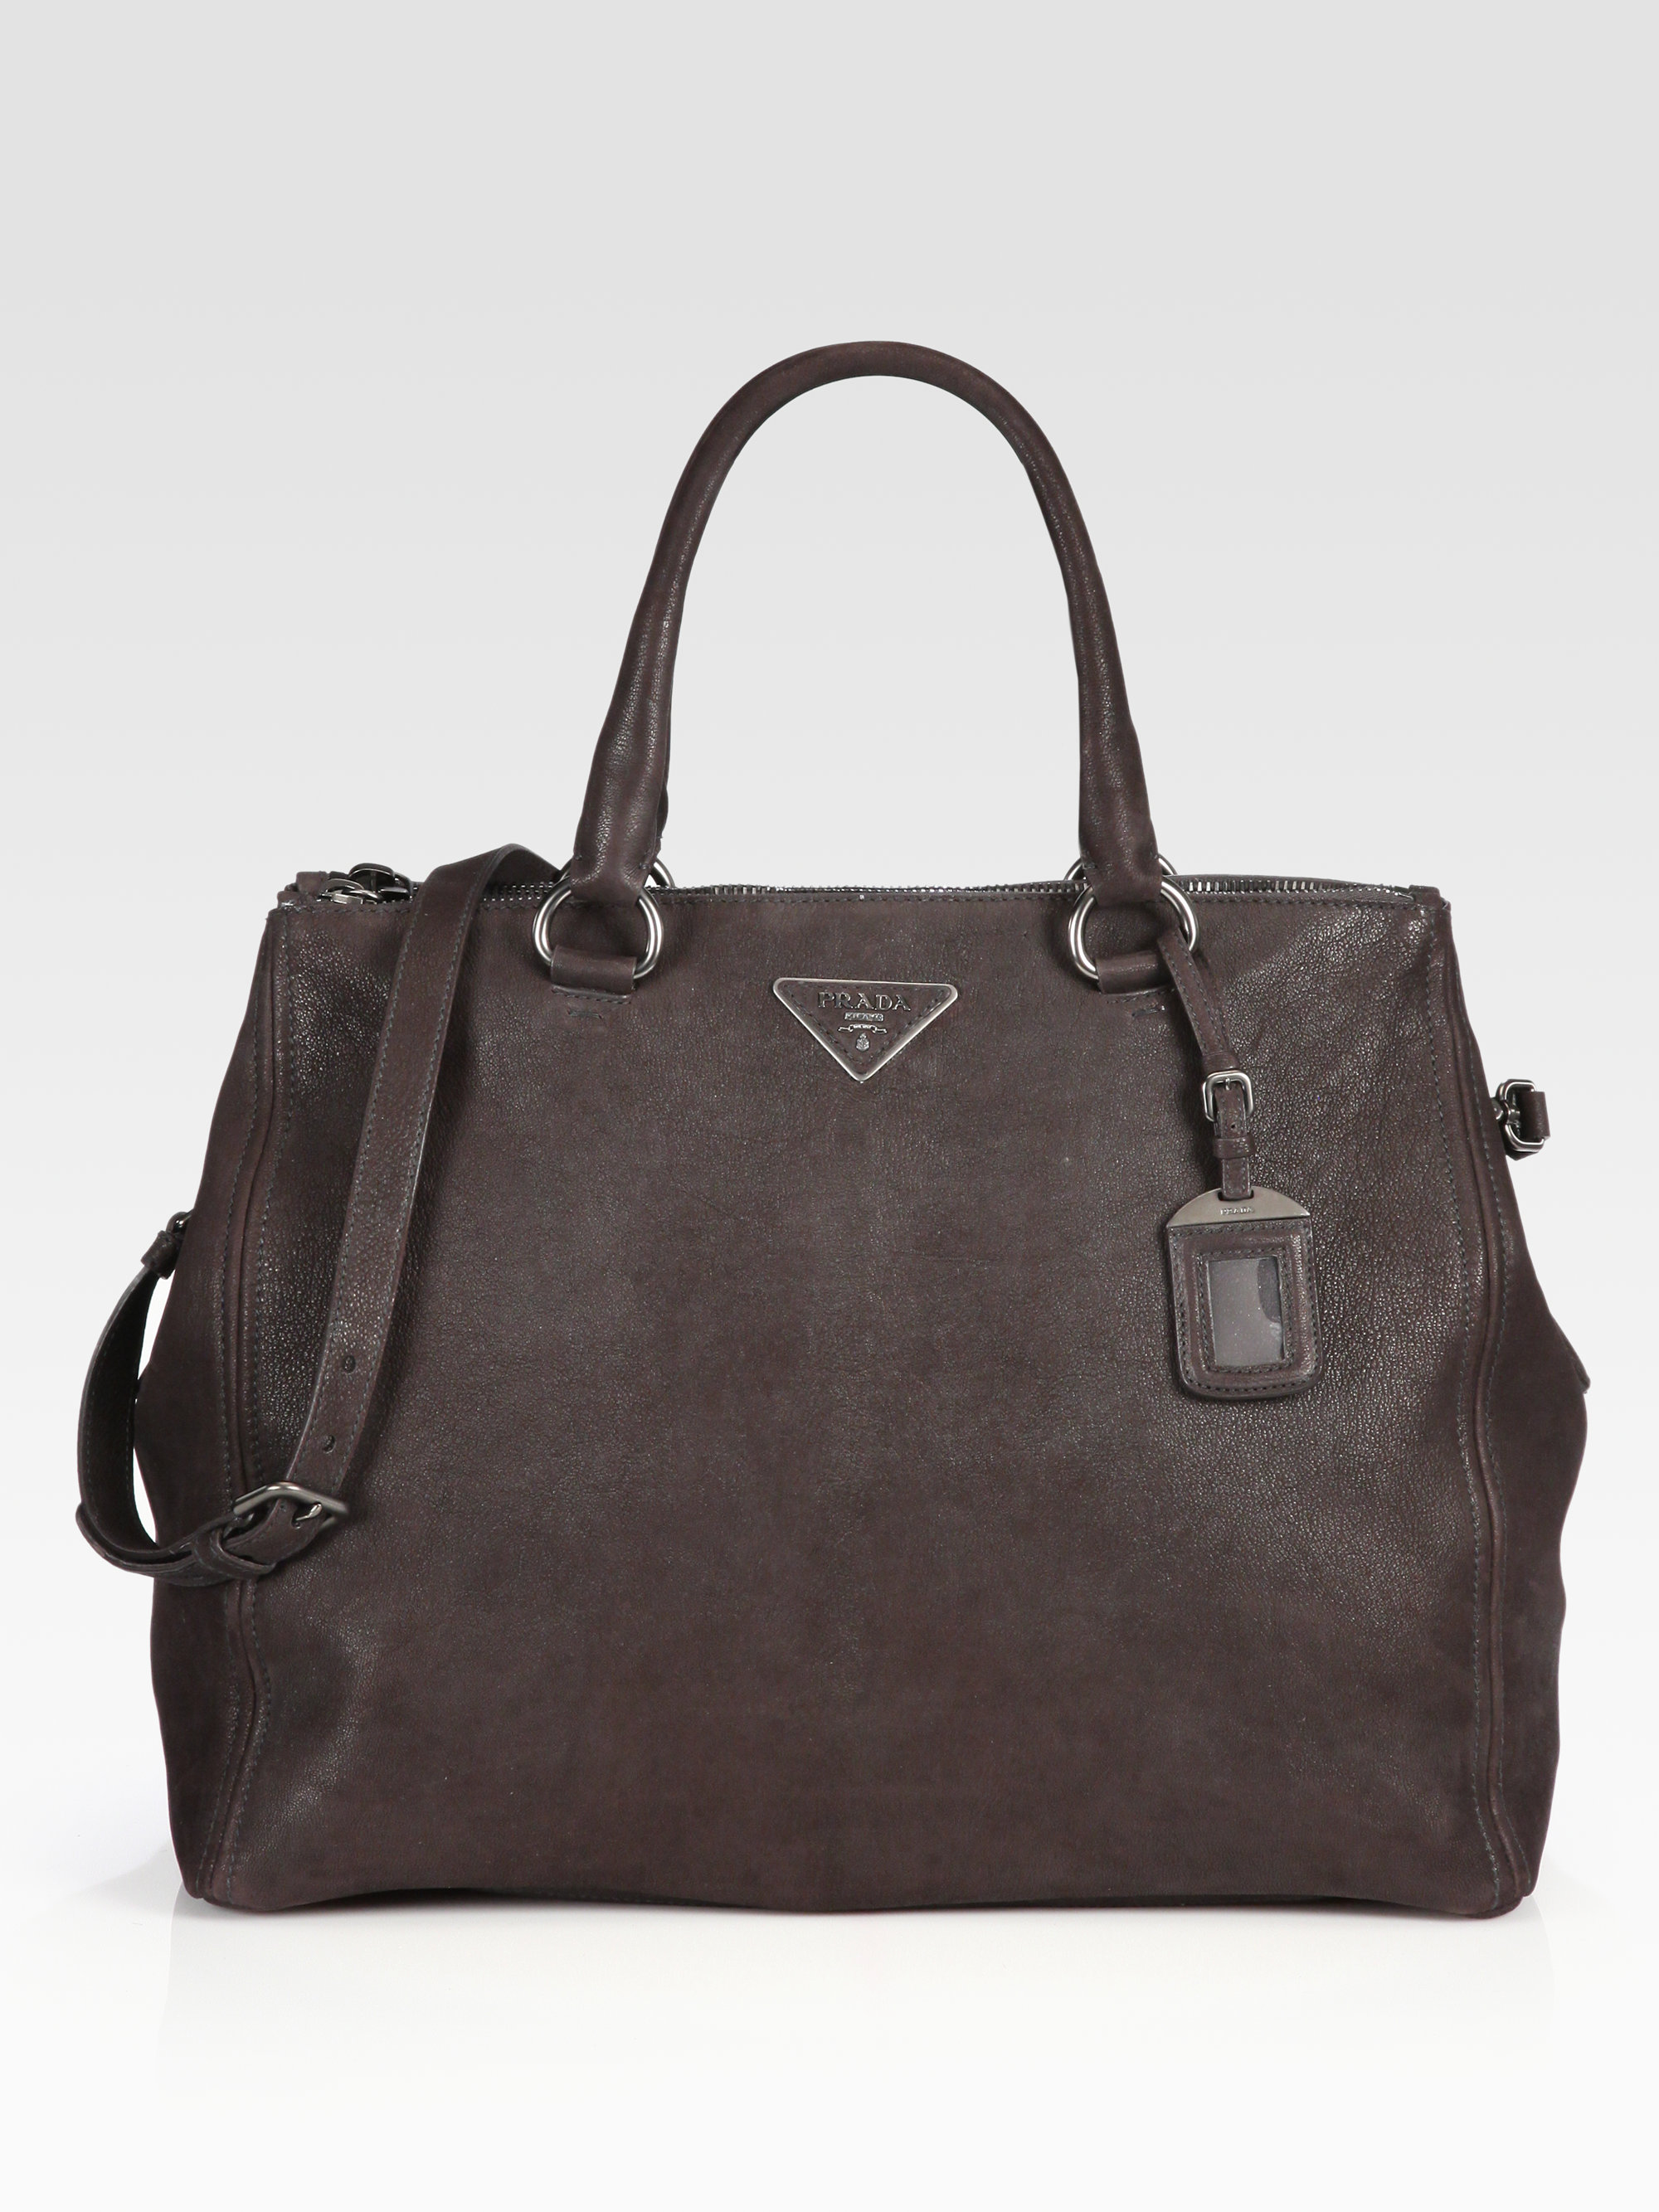 Prada Capra Large Leather Tote Bag in Black (brown) | Lyst